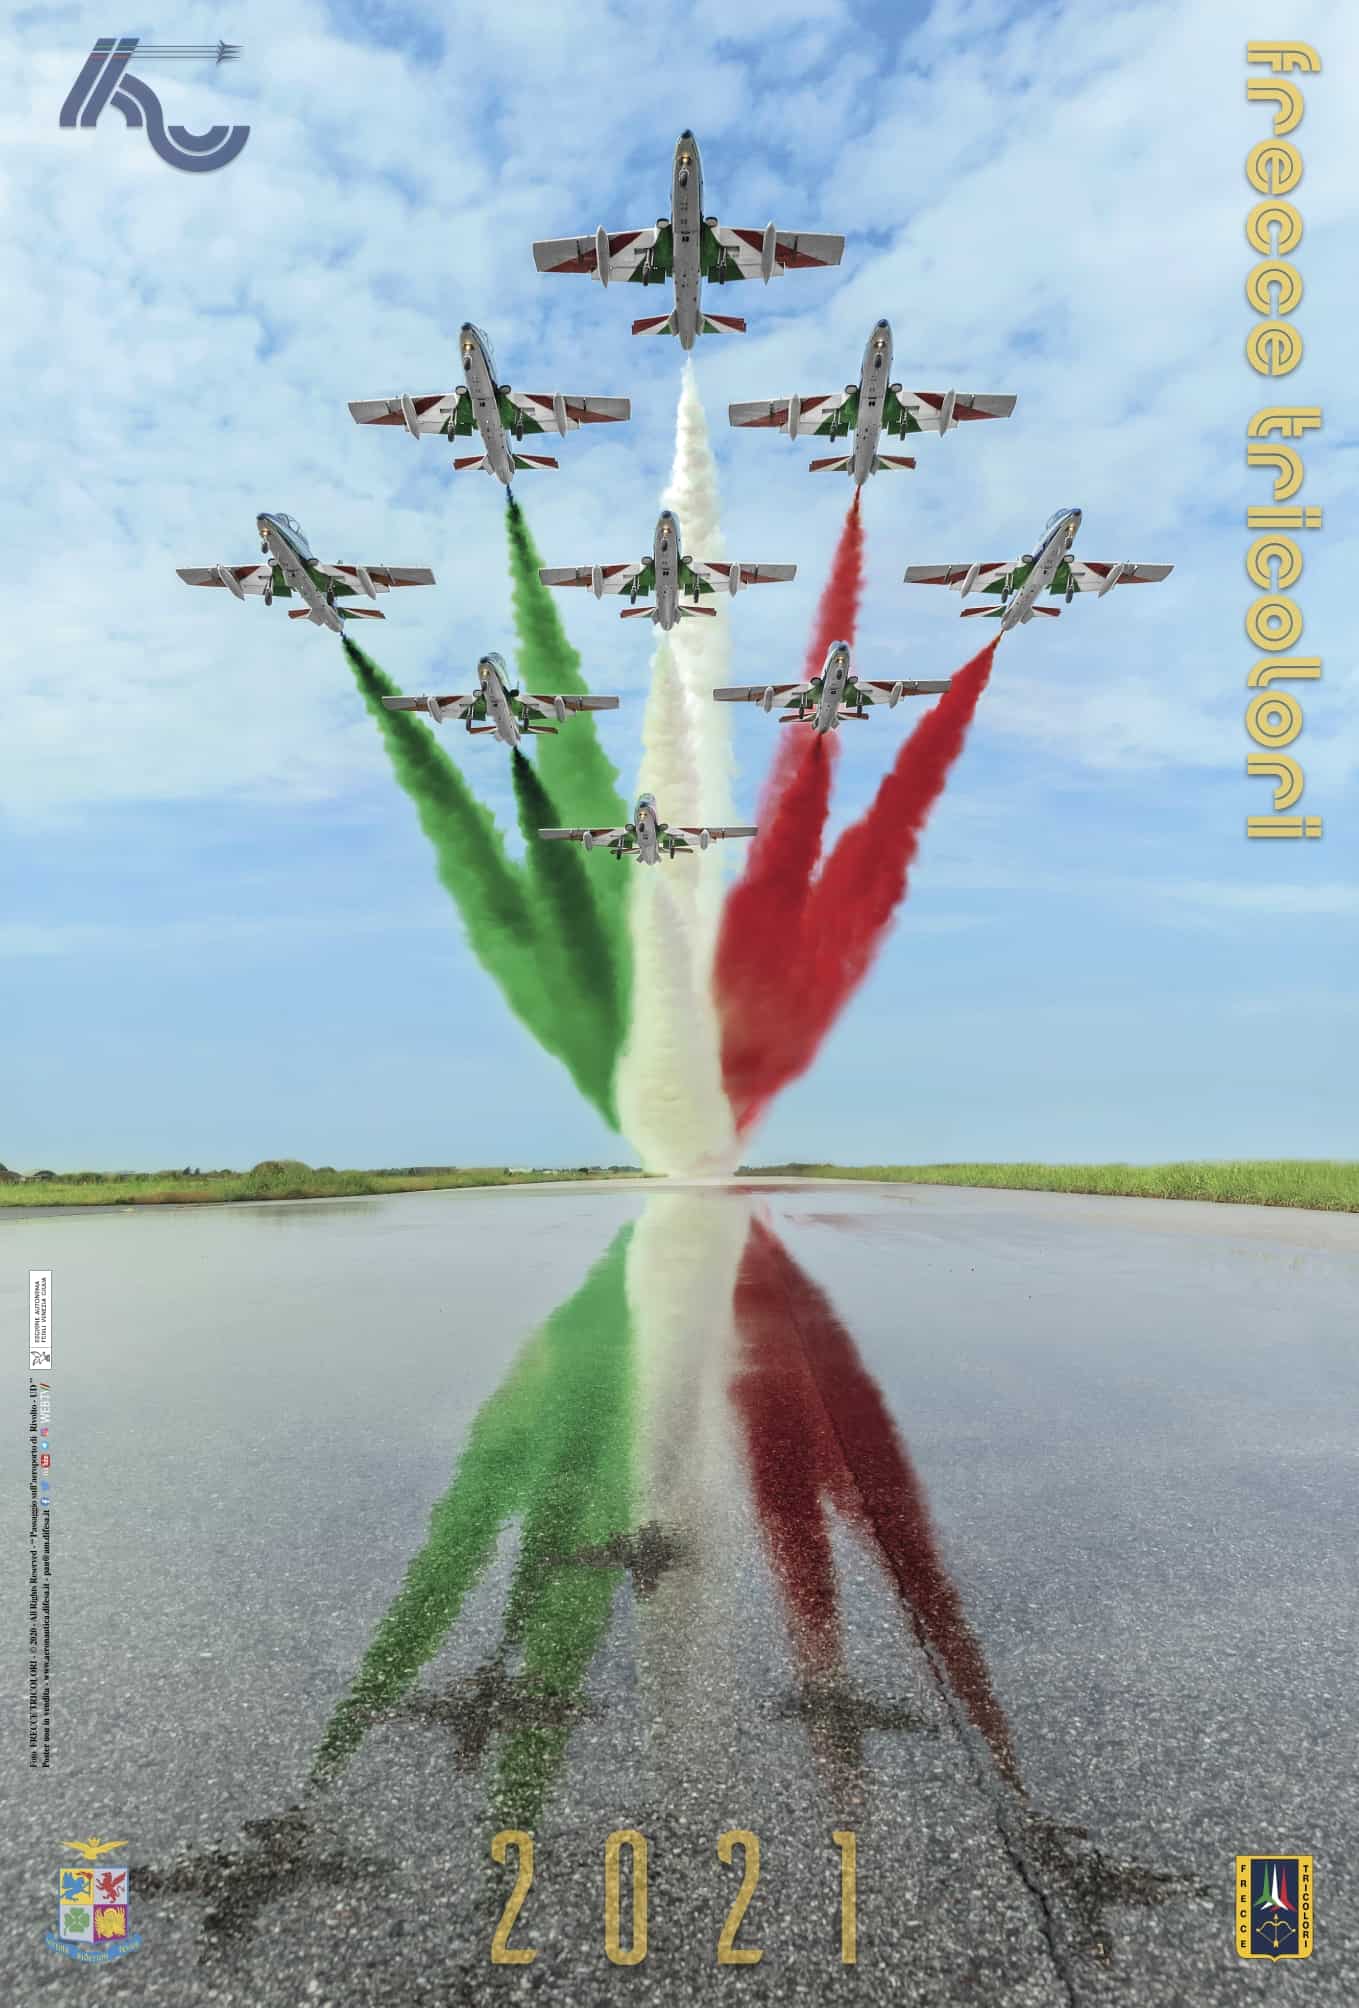 Programma frecce tricolori 2021 Airholic.it